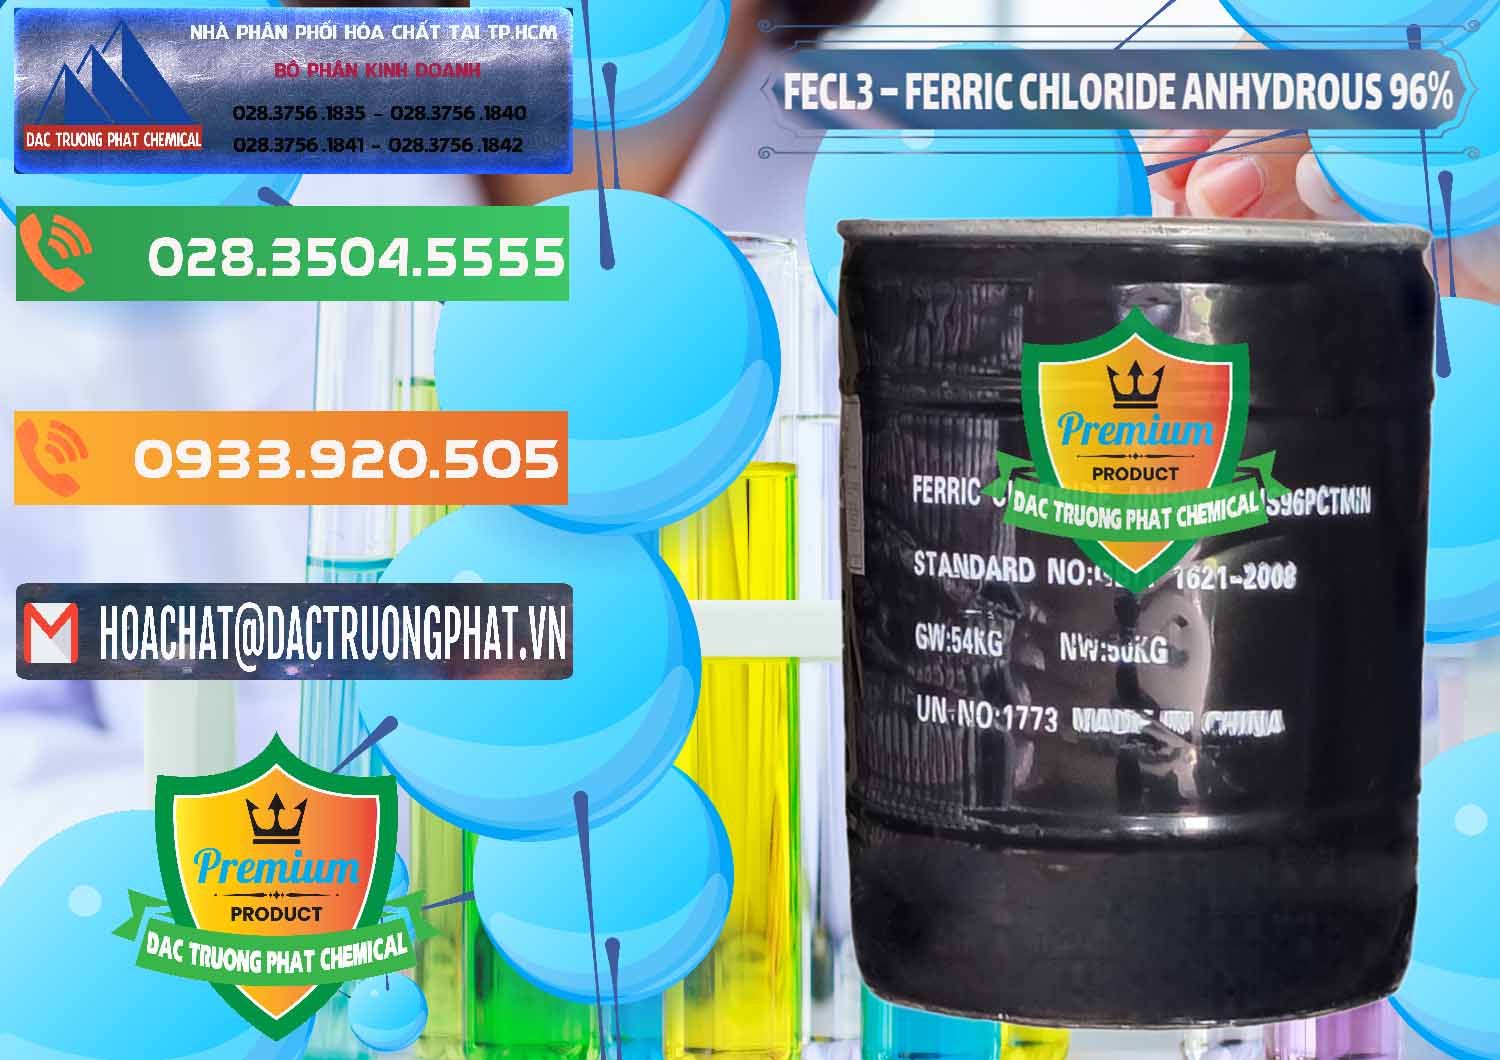 Công ty bán - cung cấp FECL3 – Ferric Chloride Anhydrous 96% Trung Quốc China - 0065 - Cty nhập khẩu và phân phối hóa chất tại TP.HCM - hoachatxulynuoc.com.vn